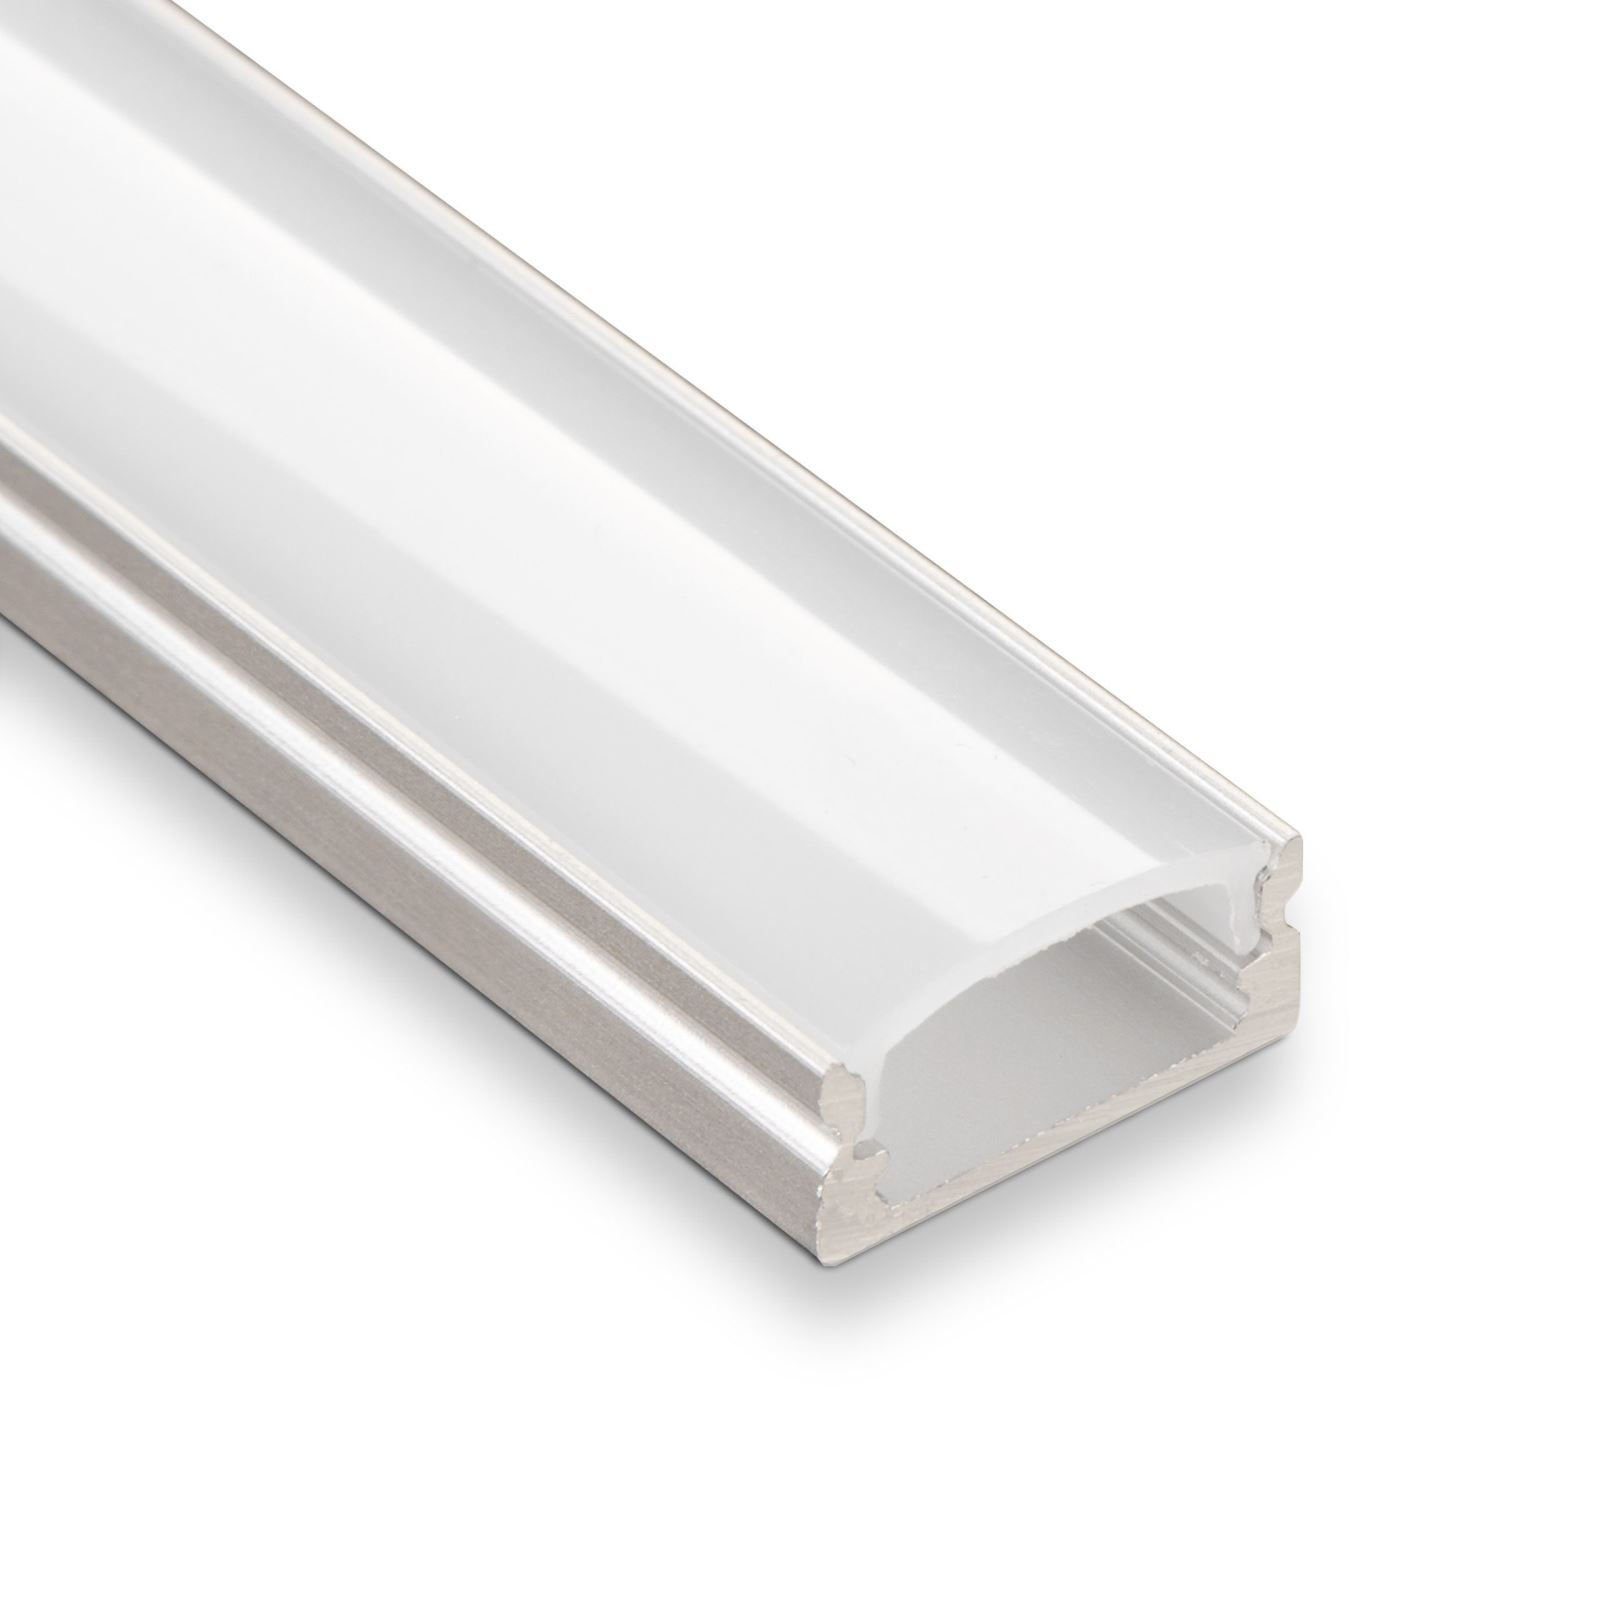 SO-TECH® LED-Stripe-Profil 10 Stück LED-Aluprofil 11, 22 oder 33, Länge je 2 m, Abdeckung opal oder klar, versch. Ausführungen